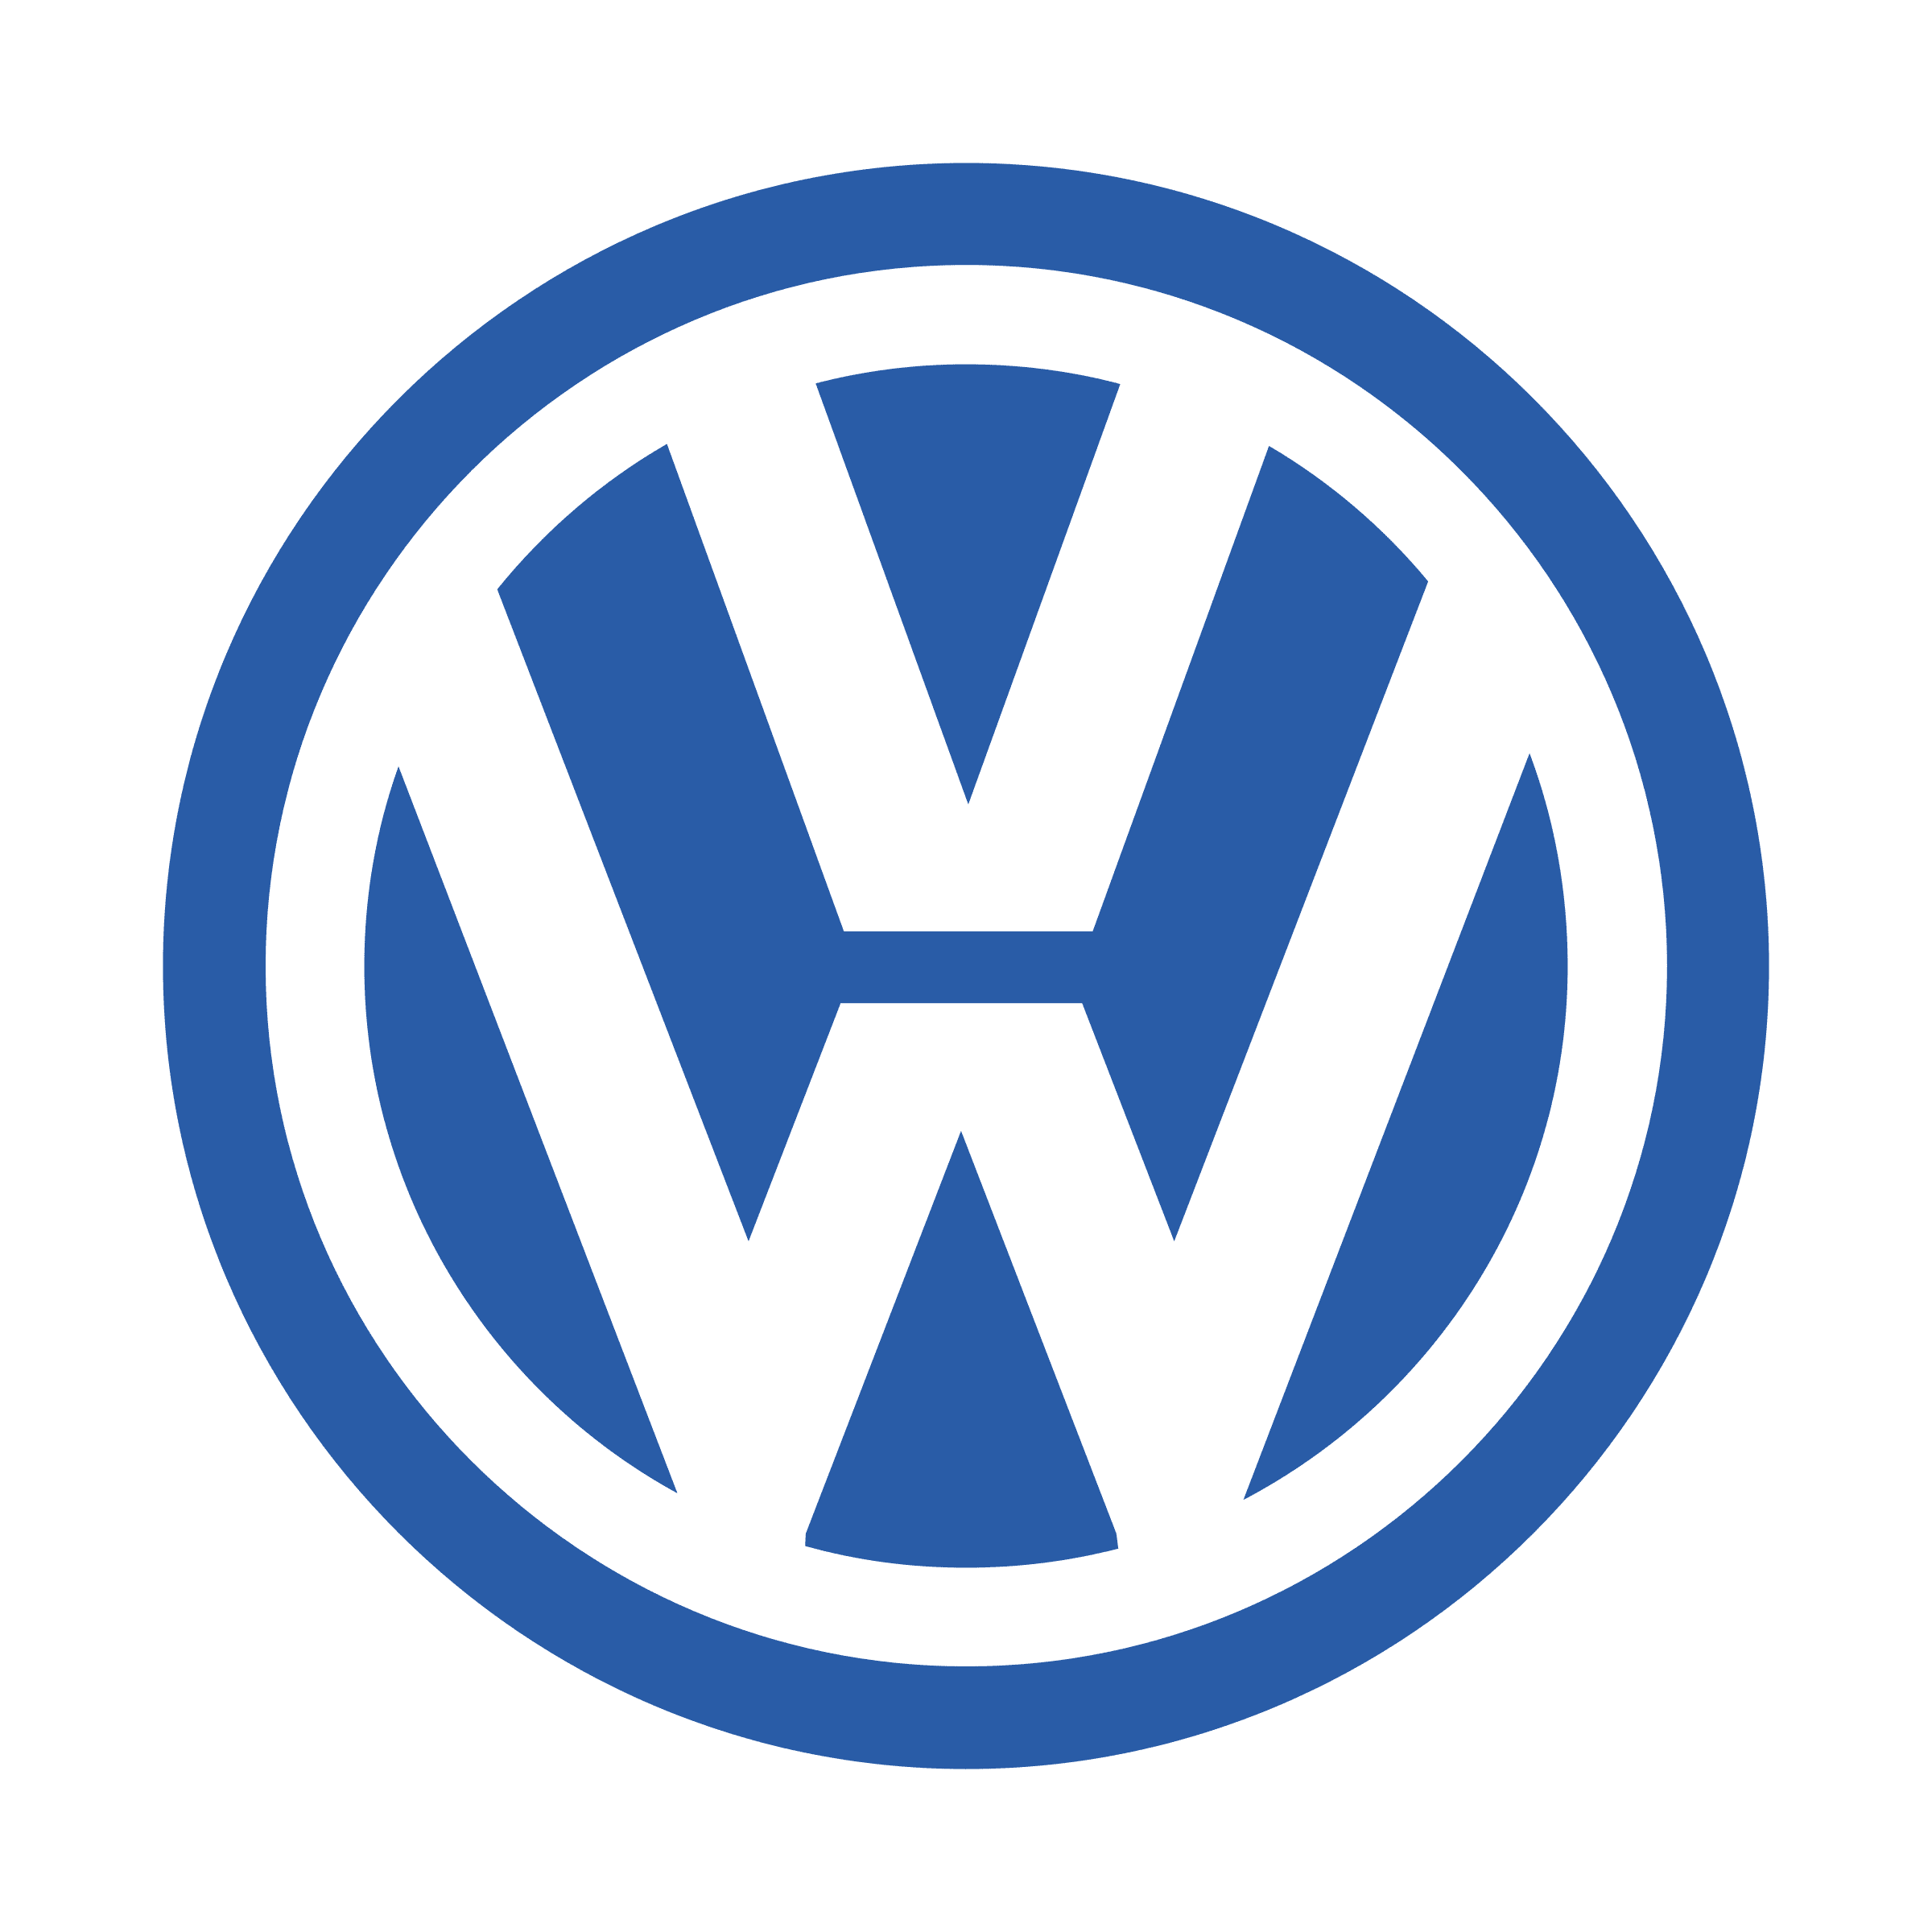 volkswagen-3-logo-png-transparent